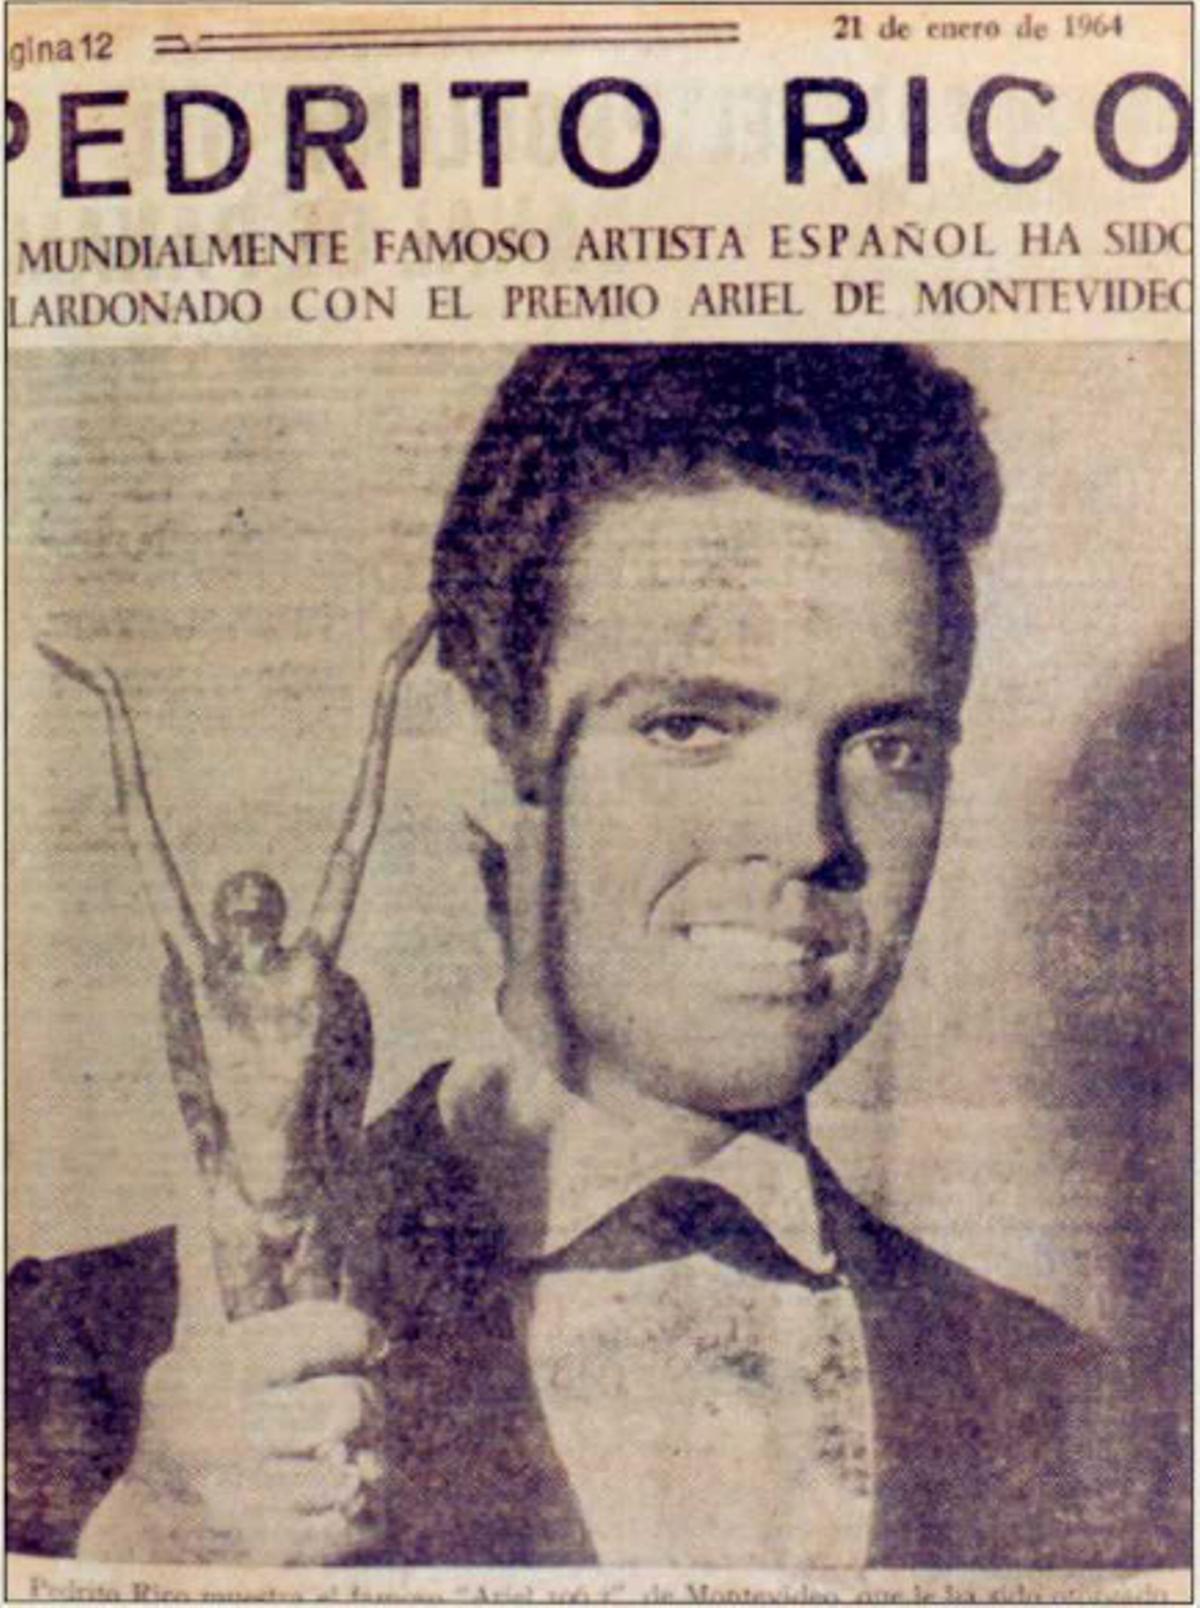 Portada para Pedrito Rico tras conseguir el Premio Ariel de Montevideo en 1964.